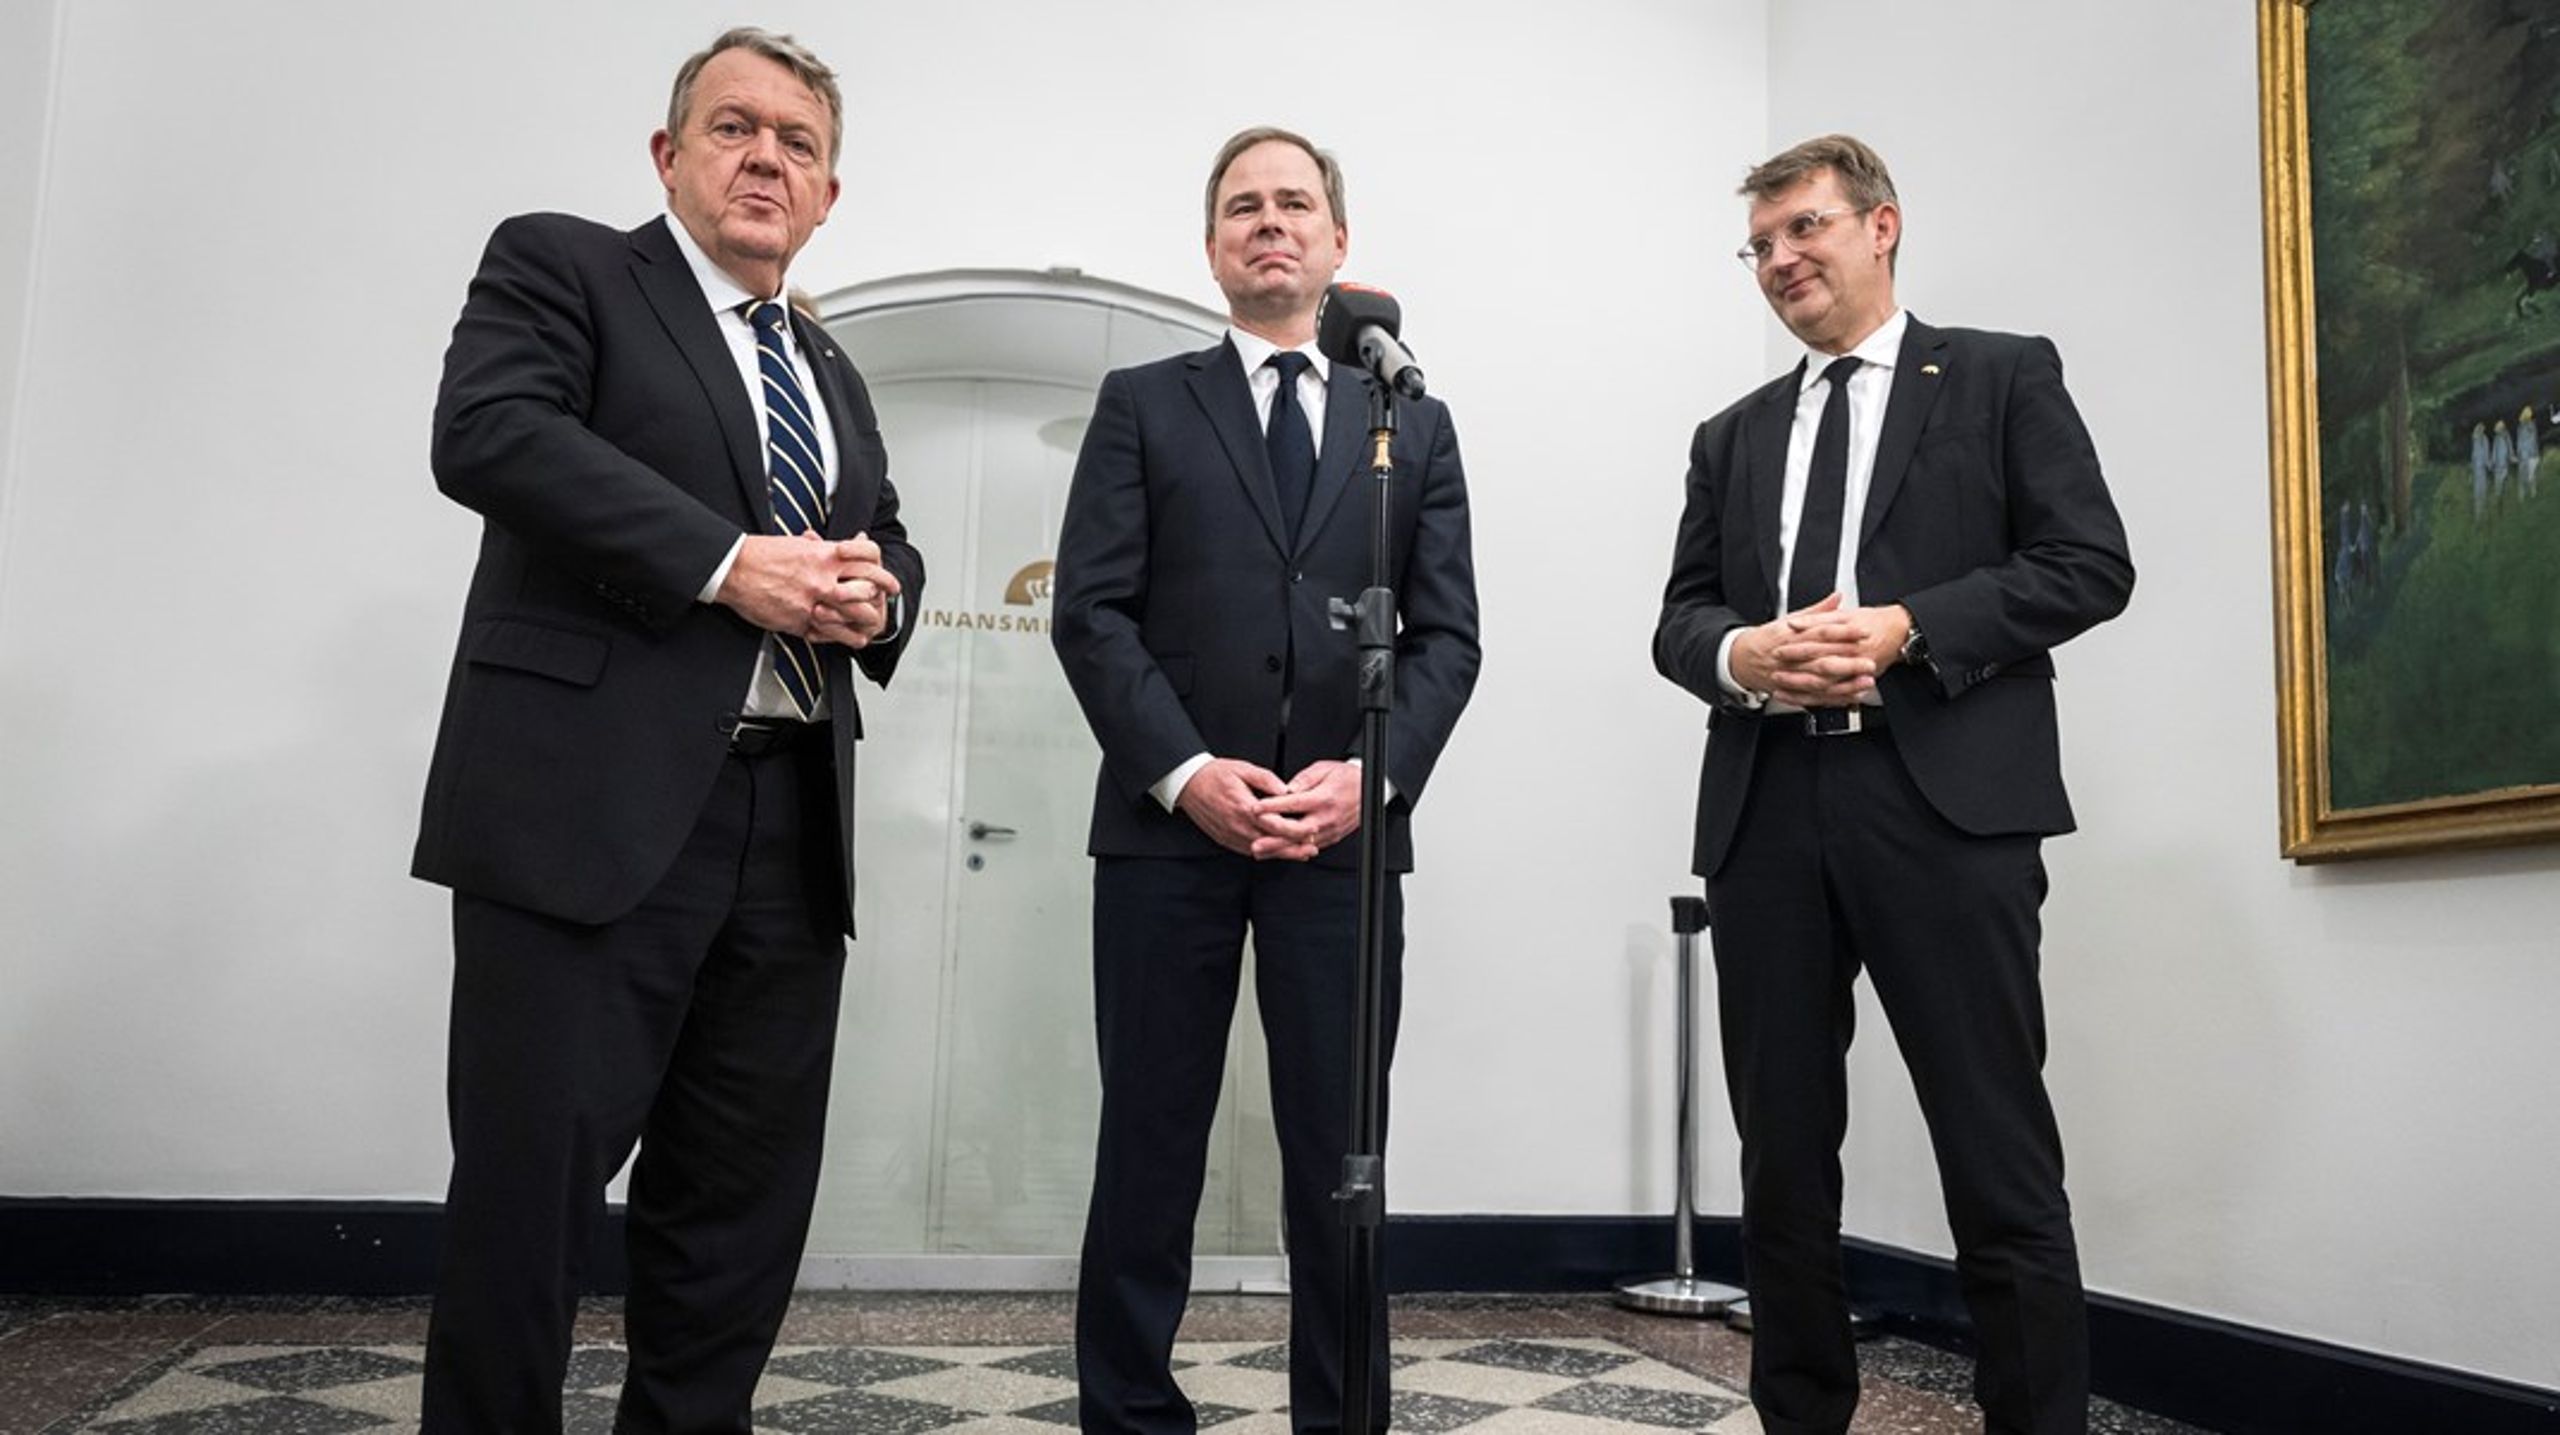 Finansminister Nicolai Wammen (S) og udenrigsminister Lars Løkke Rasmussen (M) er nye medlemmer i regeringens grønne udvalg. Troels Lund Poulsen (V) har valgt at beholde sin plads i udvalget, selv om han nu er blevet partiformand og forsvarsminister.